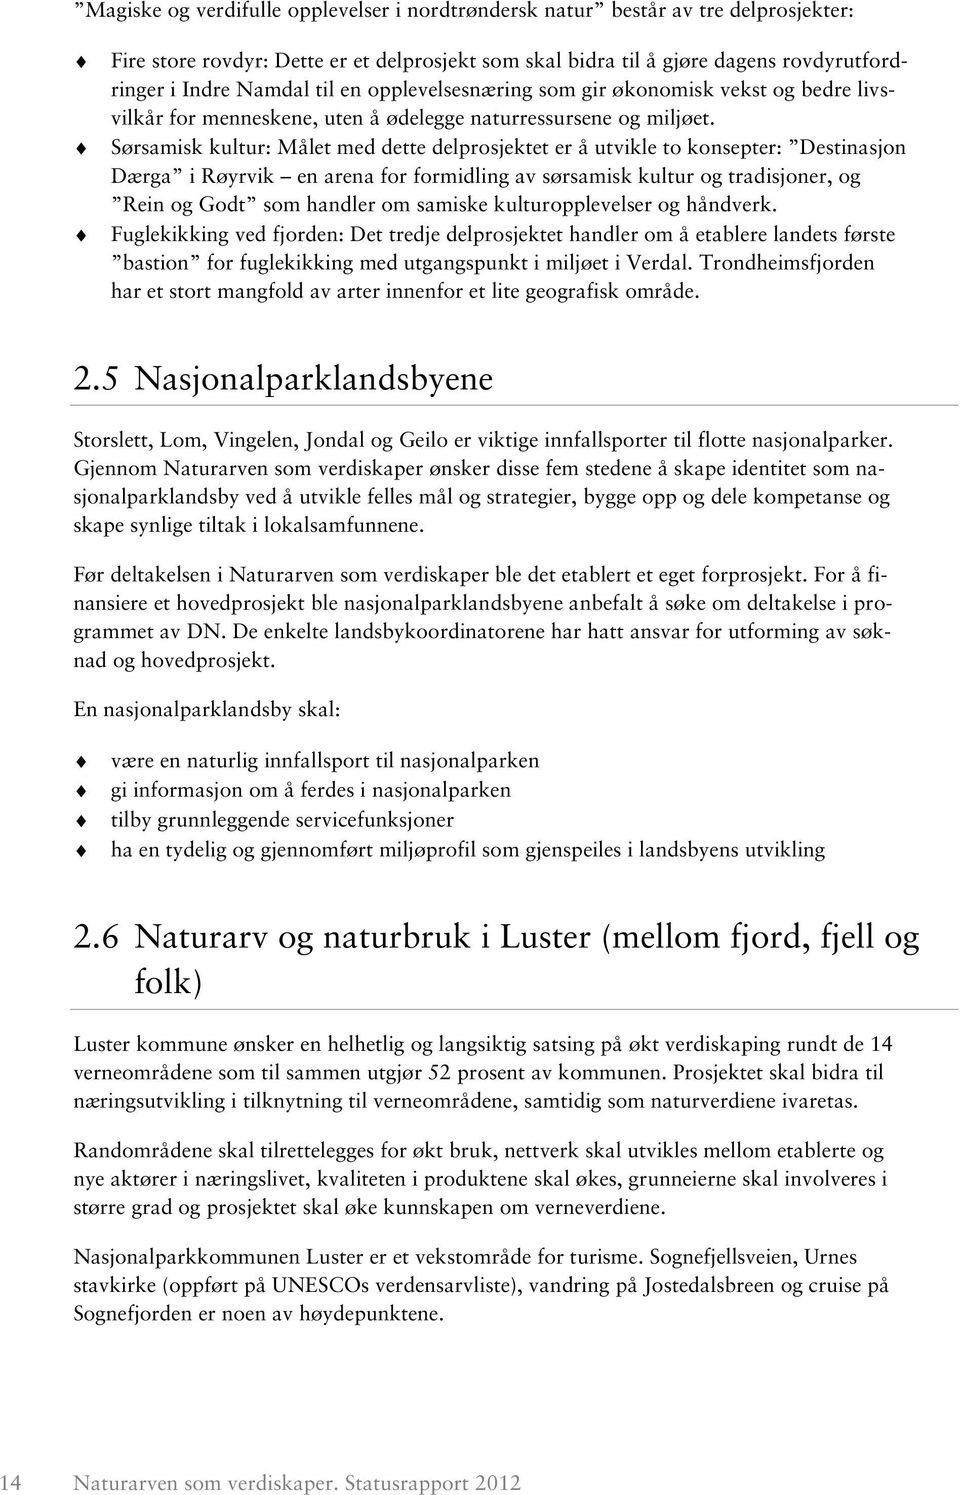 Sørsamisk kultur: Målet med dette delprosjektet er å utvikle to konsepter: Destinasjon Dærga i Røyrvik en arena for formidling av sørsamisk kultur og tradisjoner, og Rein og Godt som handler om